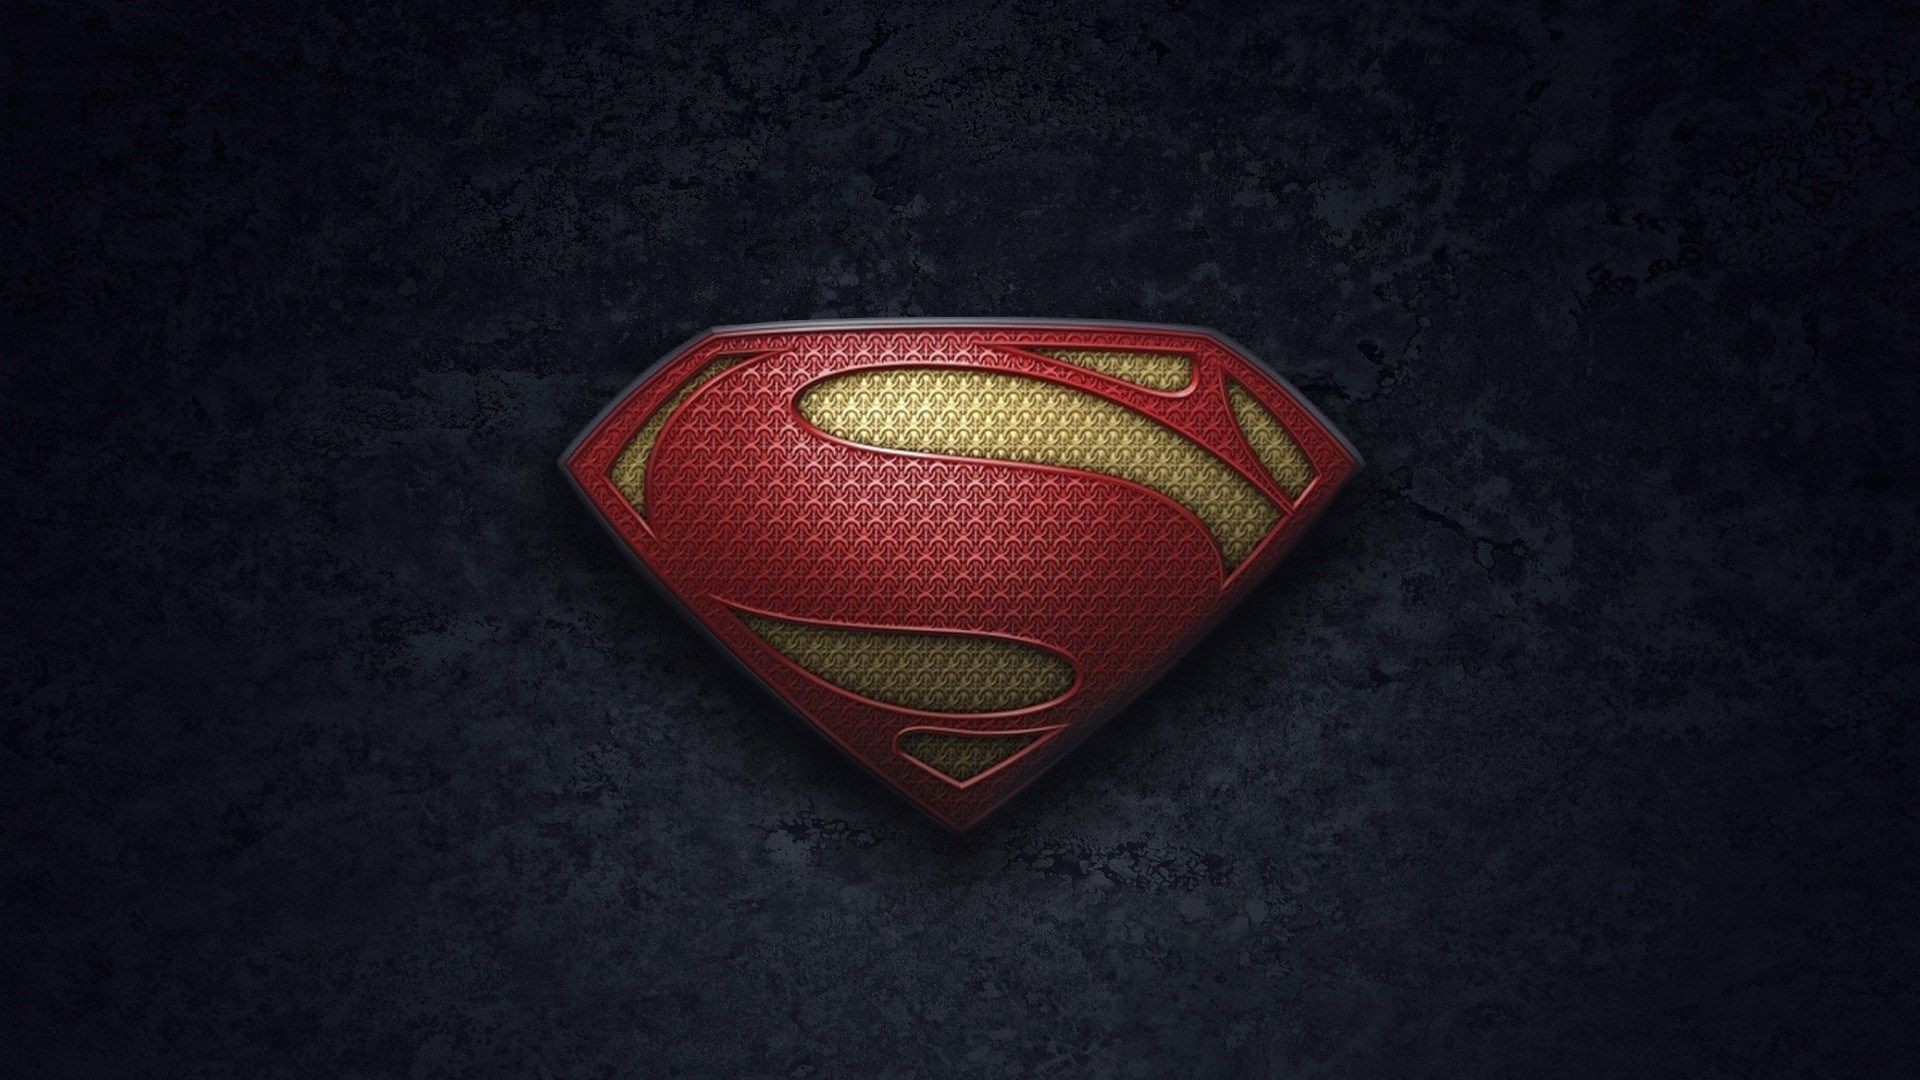 1920x1080 Superman Man Of Steel Wallpaper 1920 X 1080p